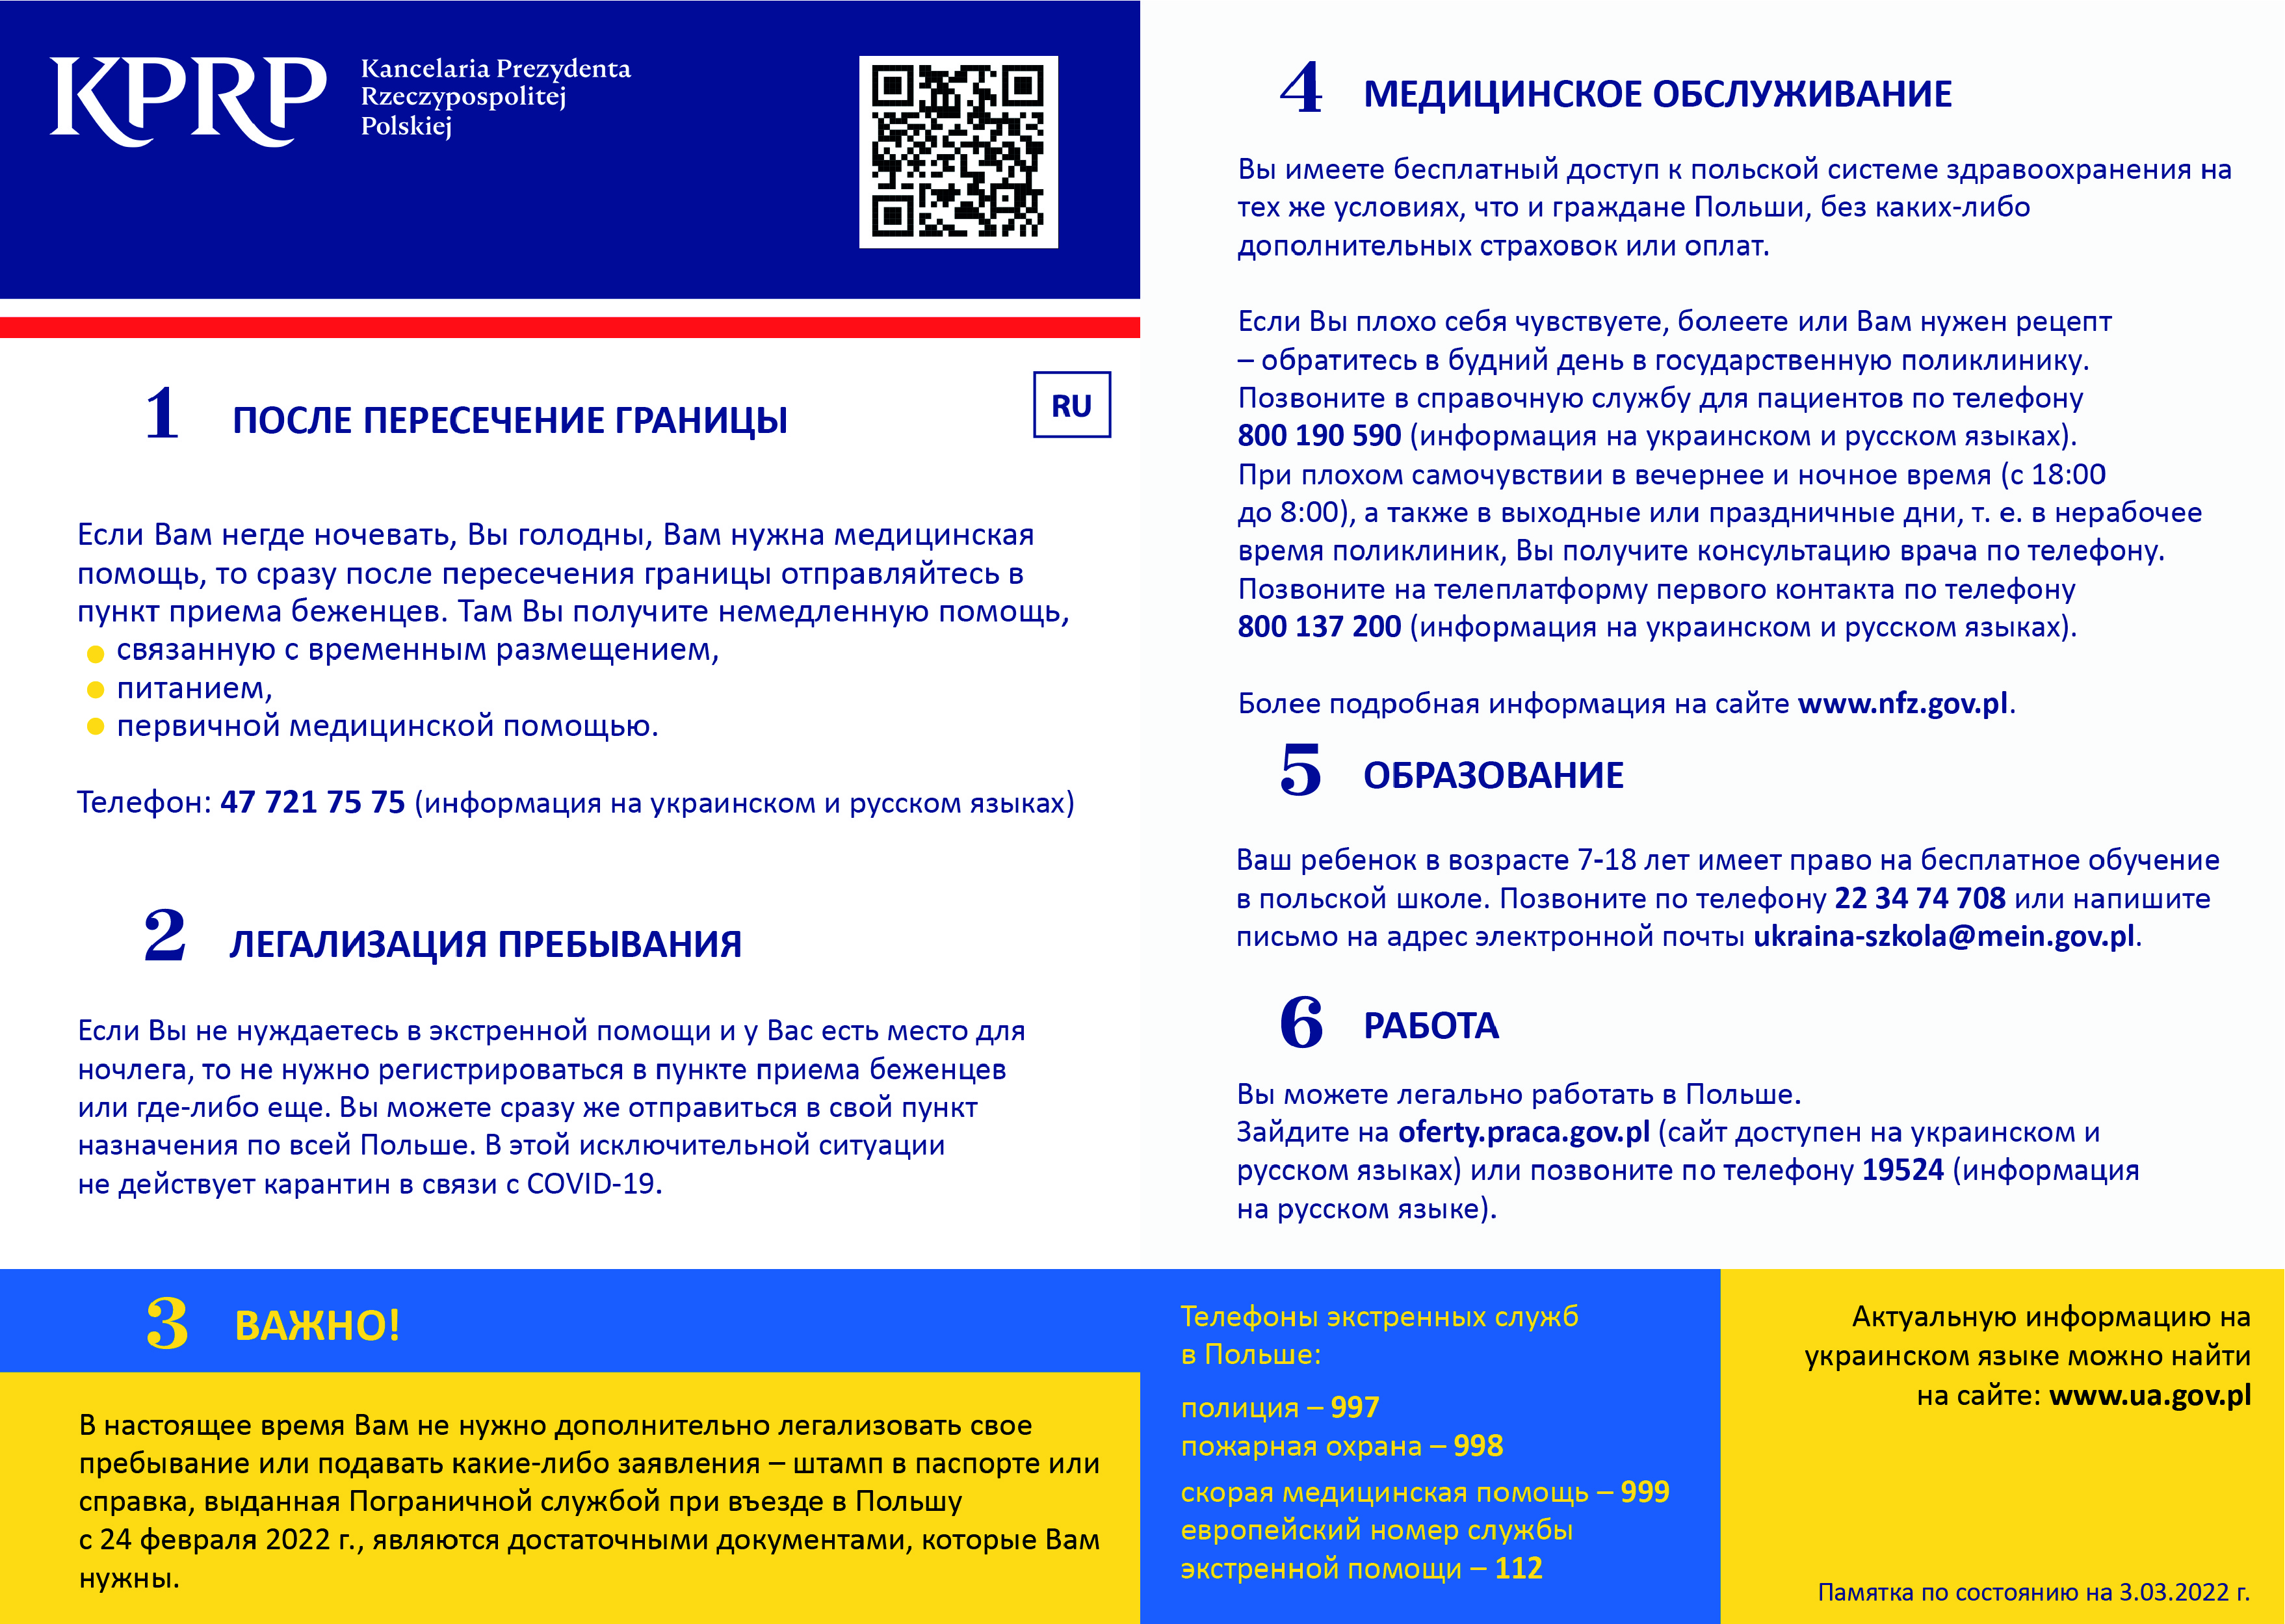 Ulotka informacyjna dla uchodźców z Ukrainy w języku rosyjskim. Wyłączenie dostępności cyfrowej na podstawie art. 3 ust. 2 pkt 5 lit a) ustawy z dnia 4 kwietnia 2019 r. o dostępności cyfrowej stron internetowych i aplikacji mobilnych podmiotów publicznych.